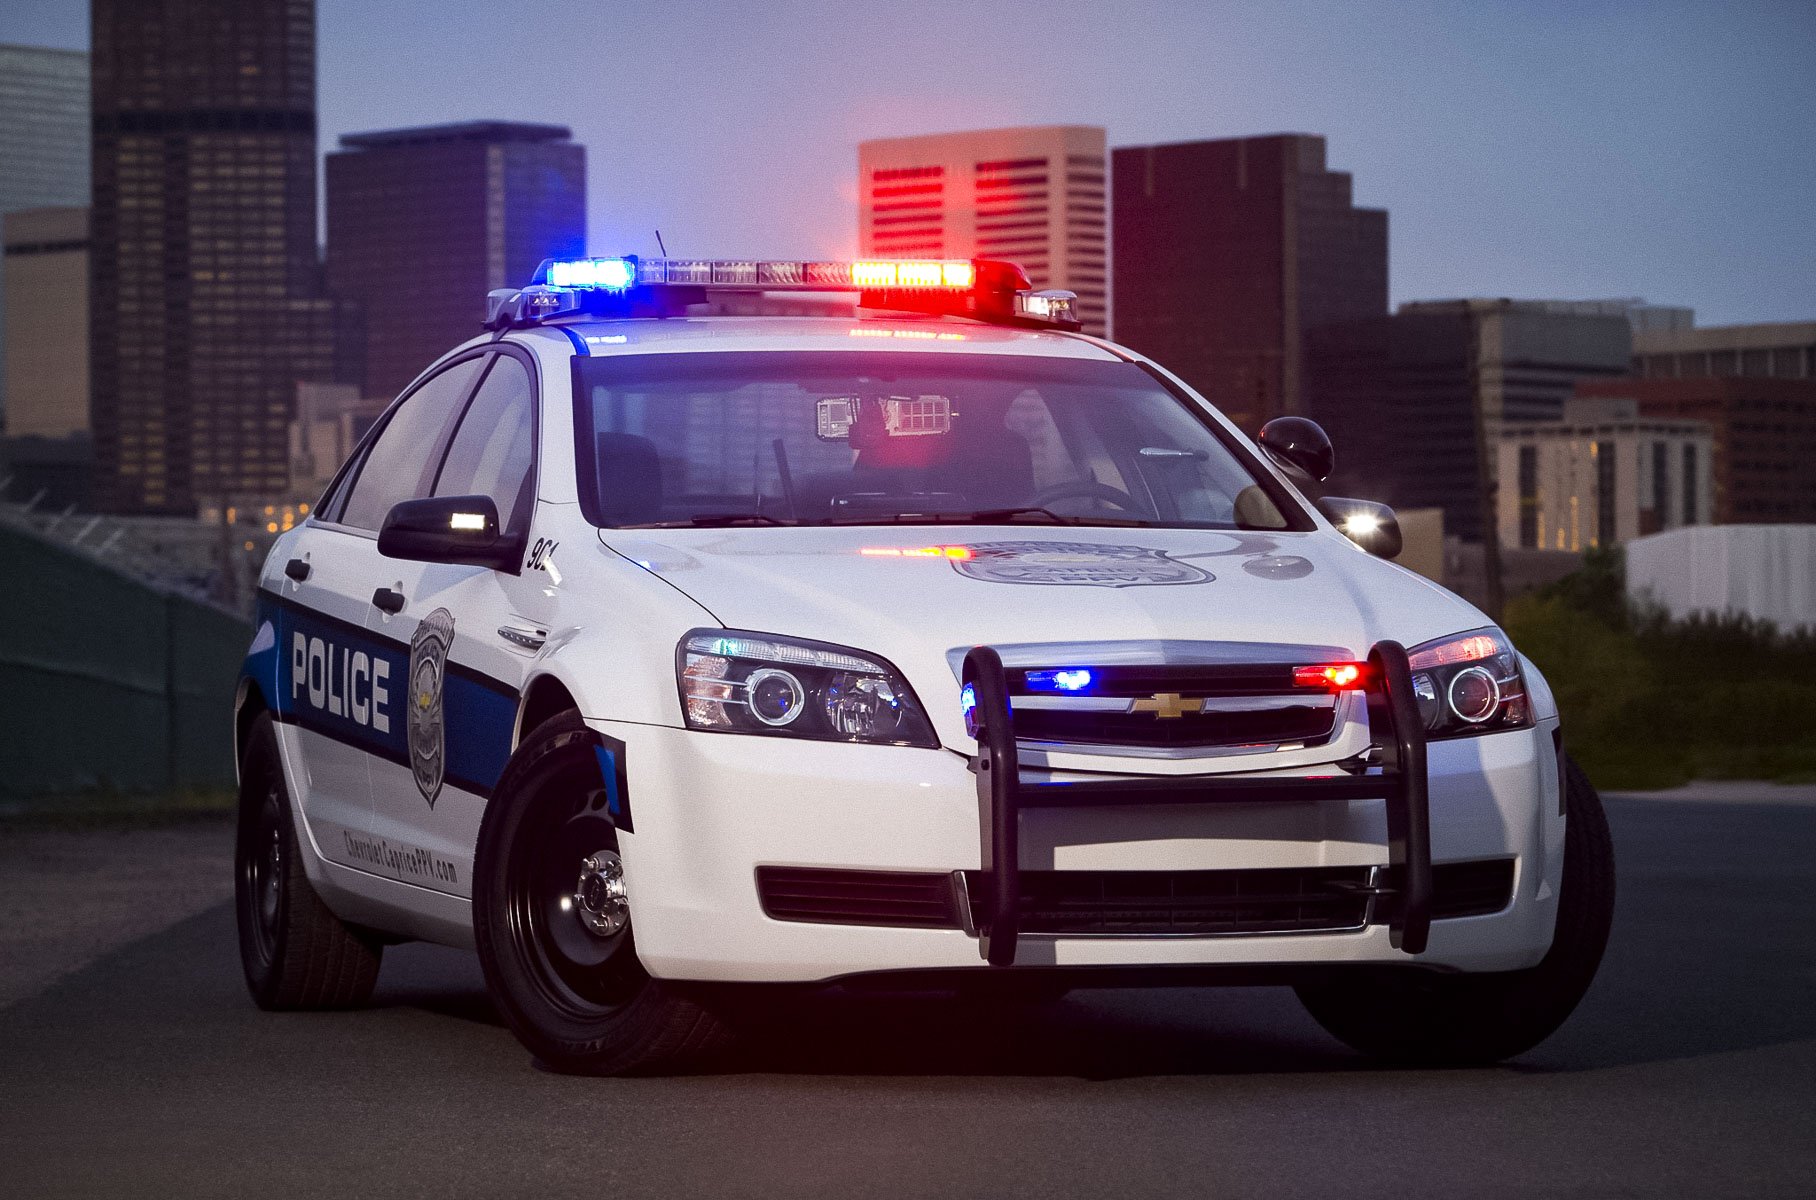 Chevrolet Caprice 2015 Police. Chevrolet Caprice 2013 Police. Полицейская машина Шевроле Авео т300 с мигалками. Полицейская Шевроле Лачетти. Полицейская машина автомобиля